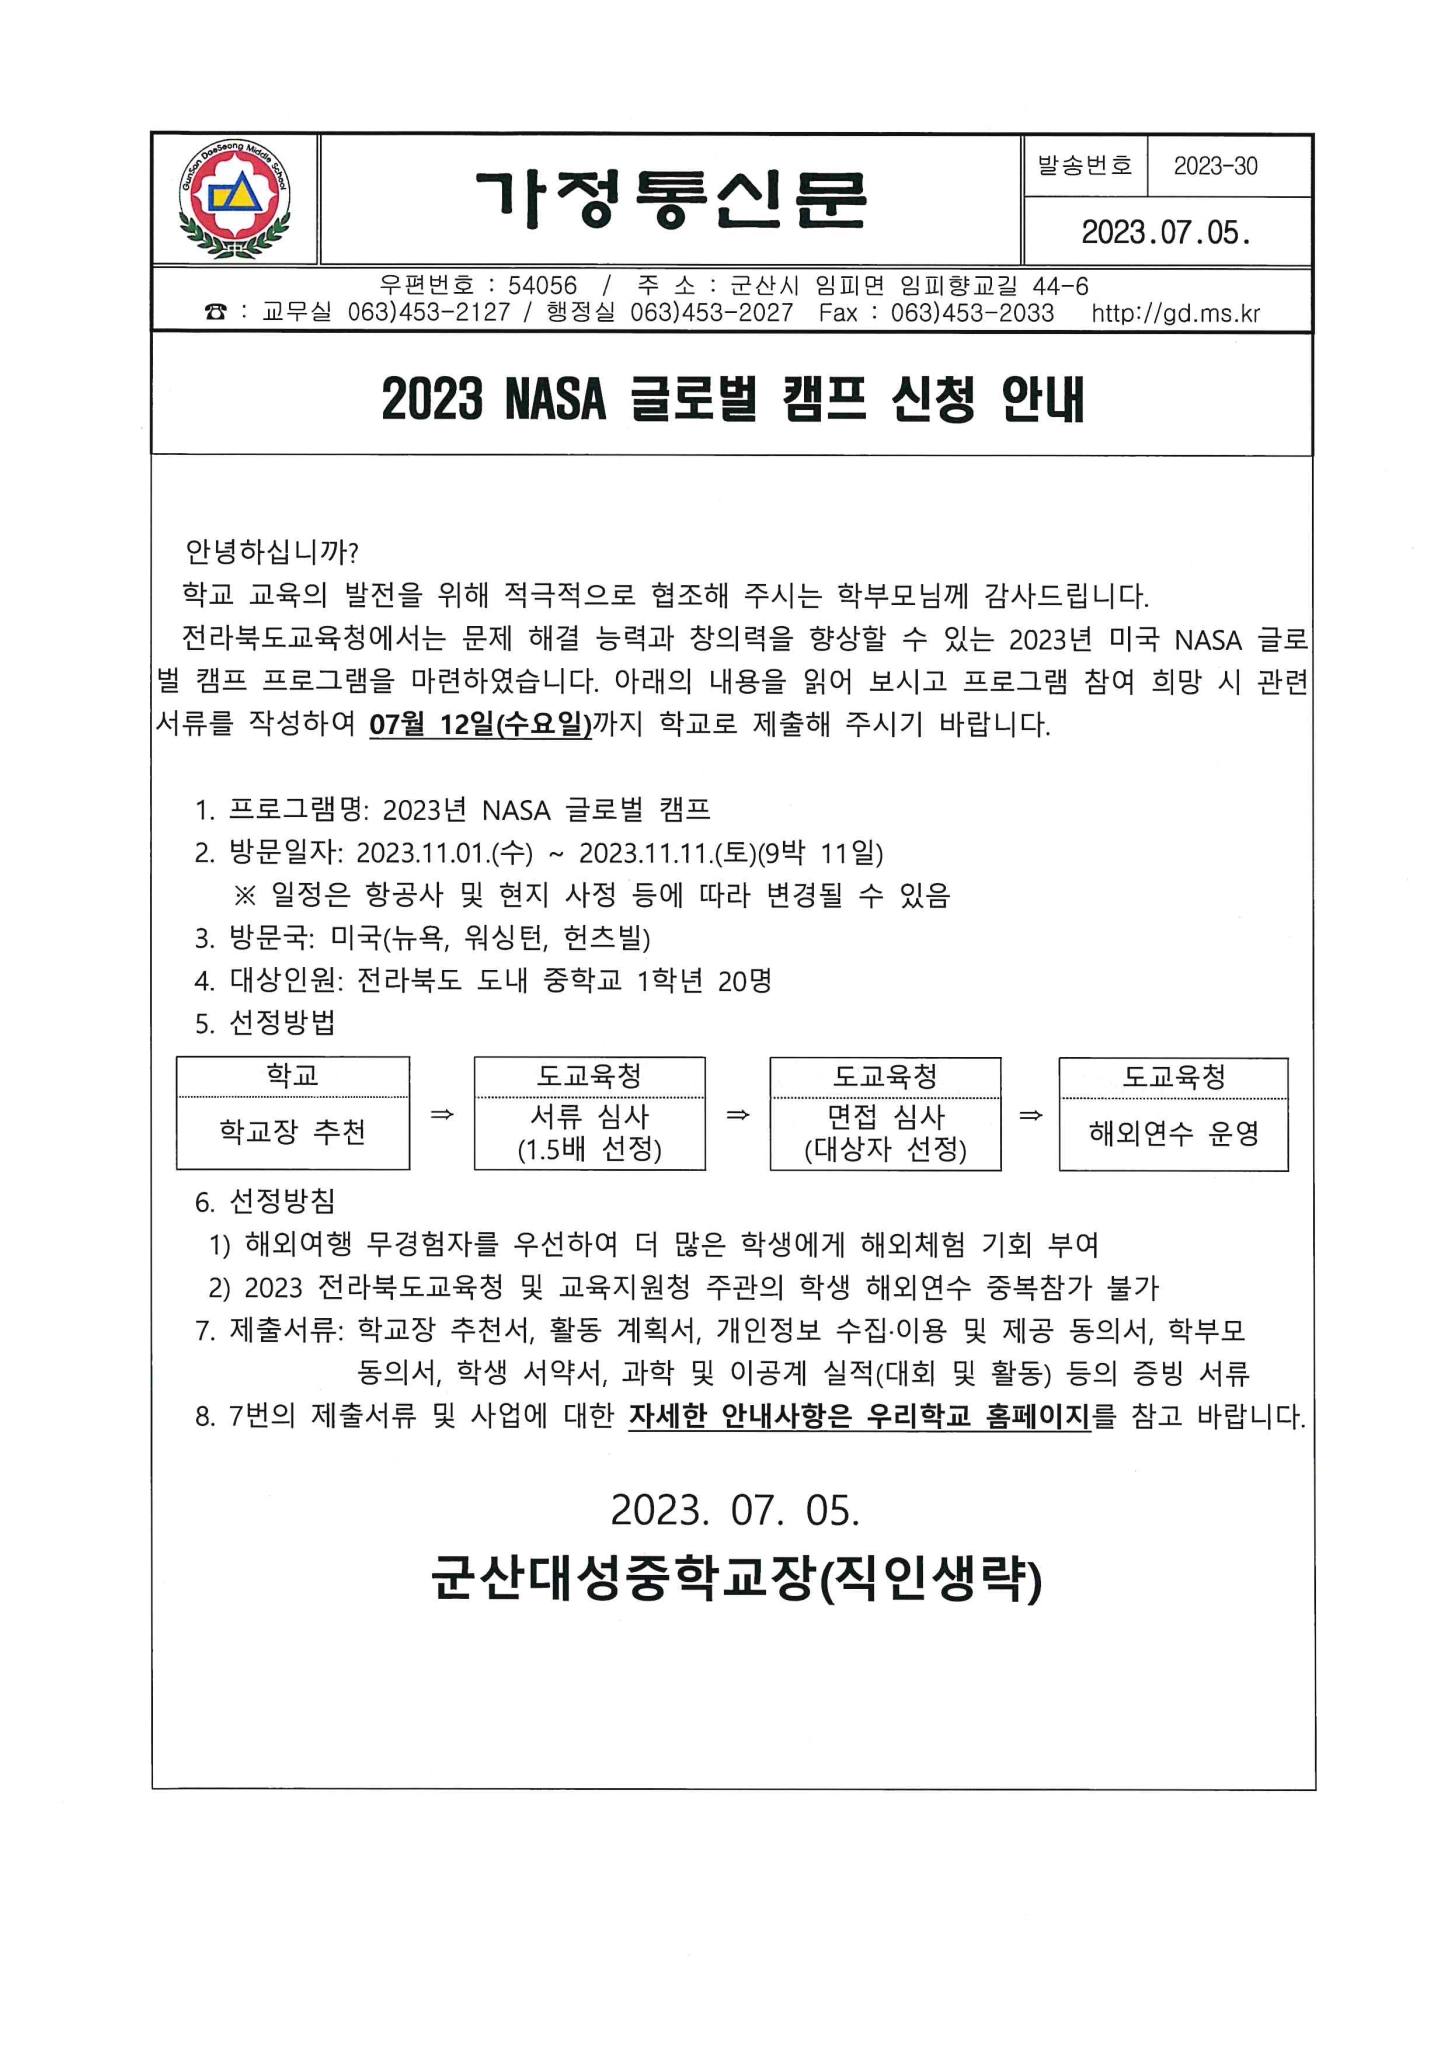 2032-30호 2023NASA 글로벌 캠프 신청 안내1